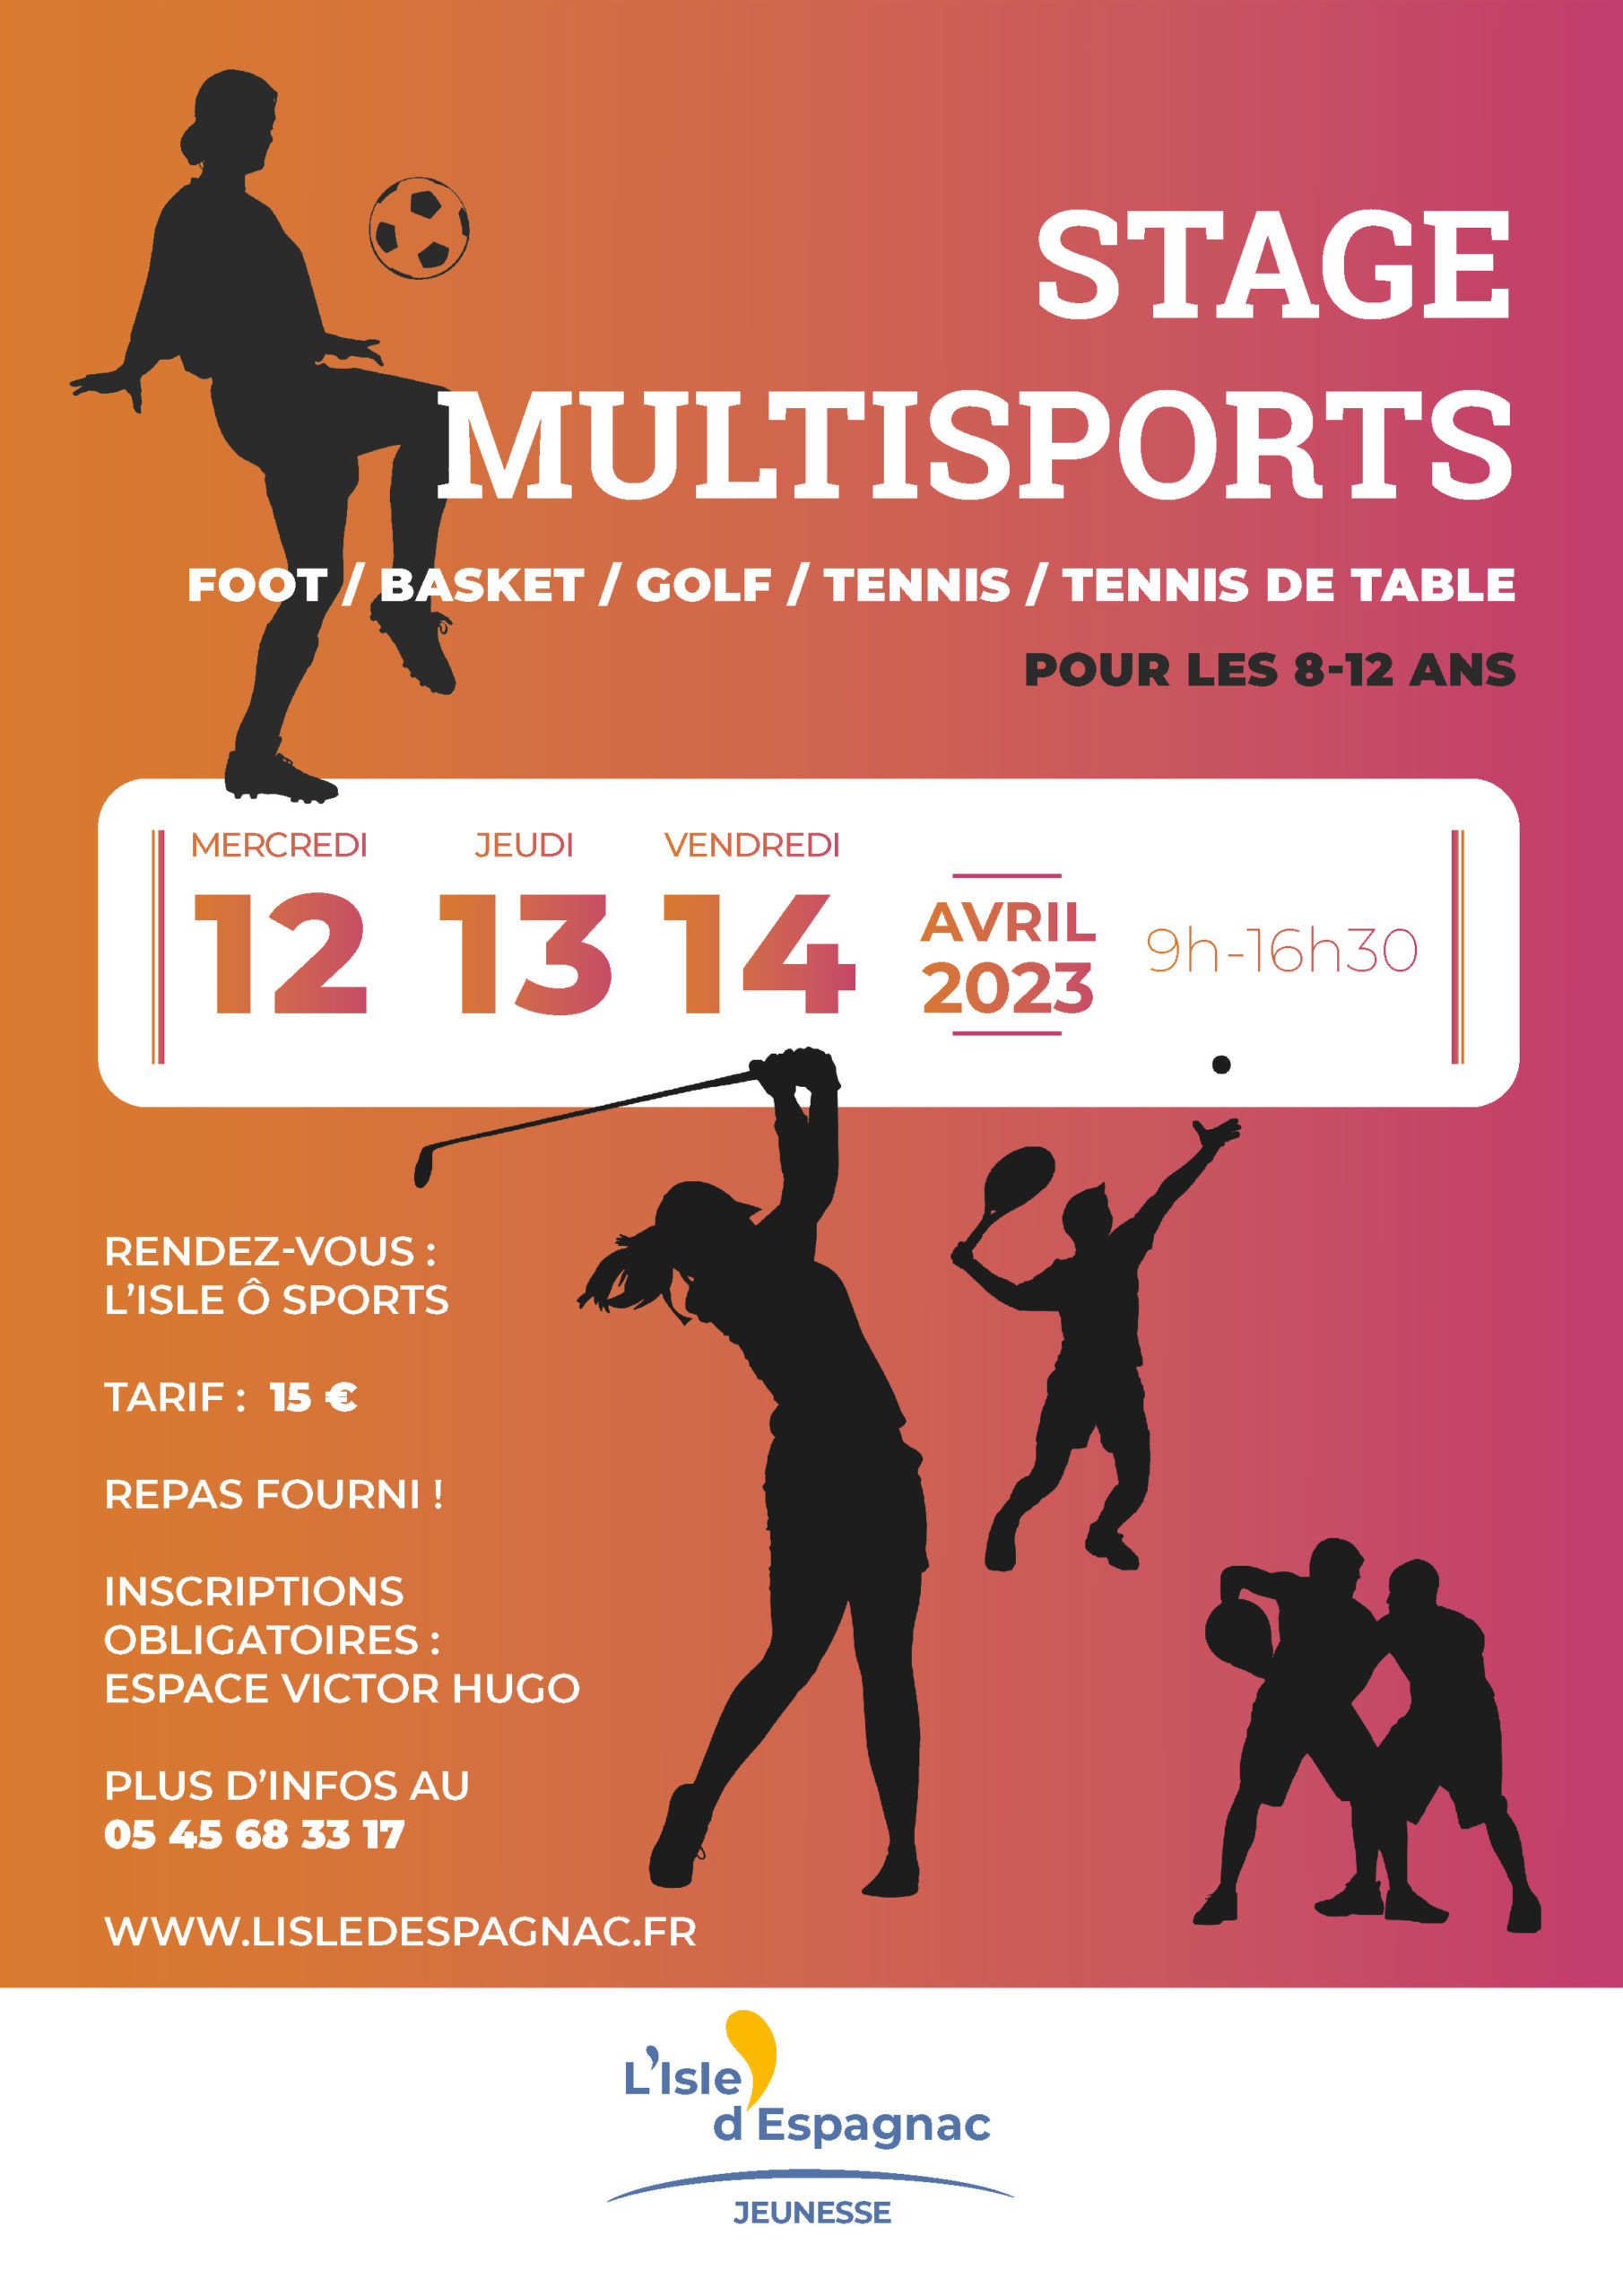 lisle-despagnac-stage-multisports-affiche